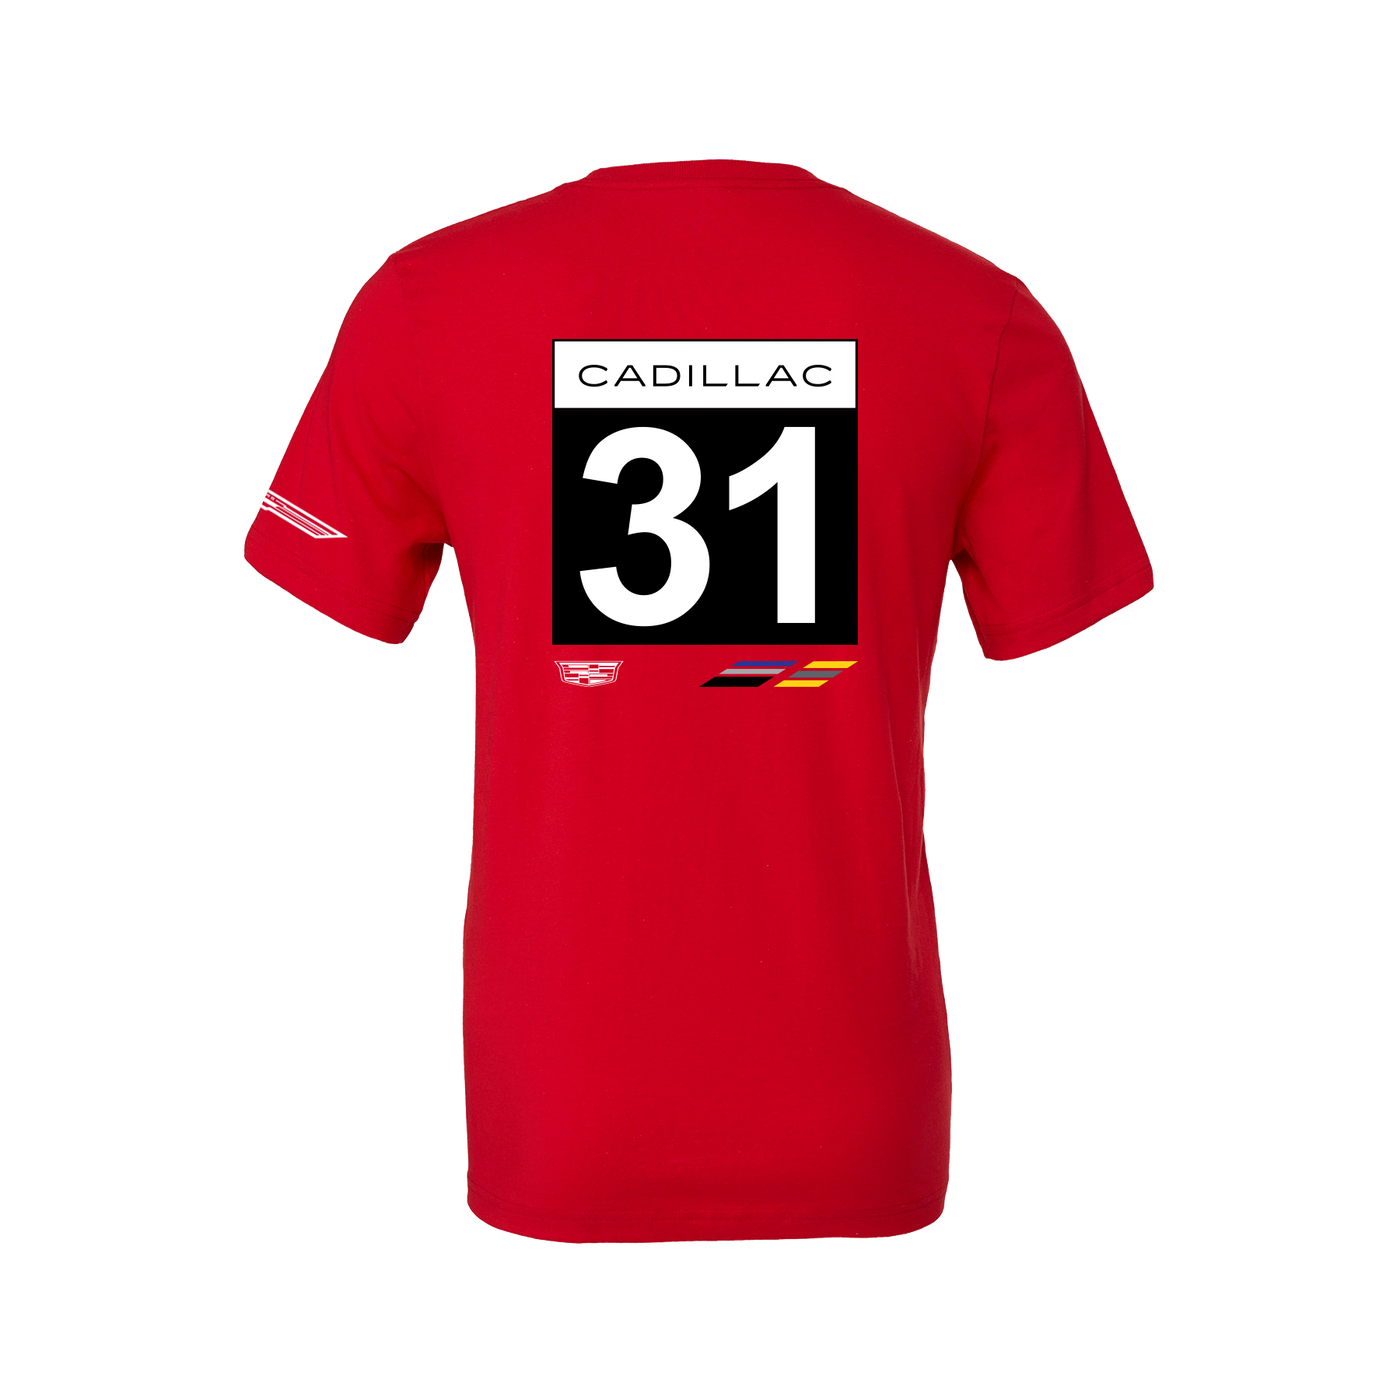 Cadillac Racing No. 31 T-Shirt